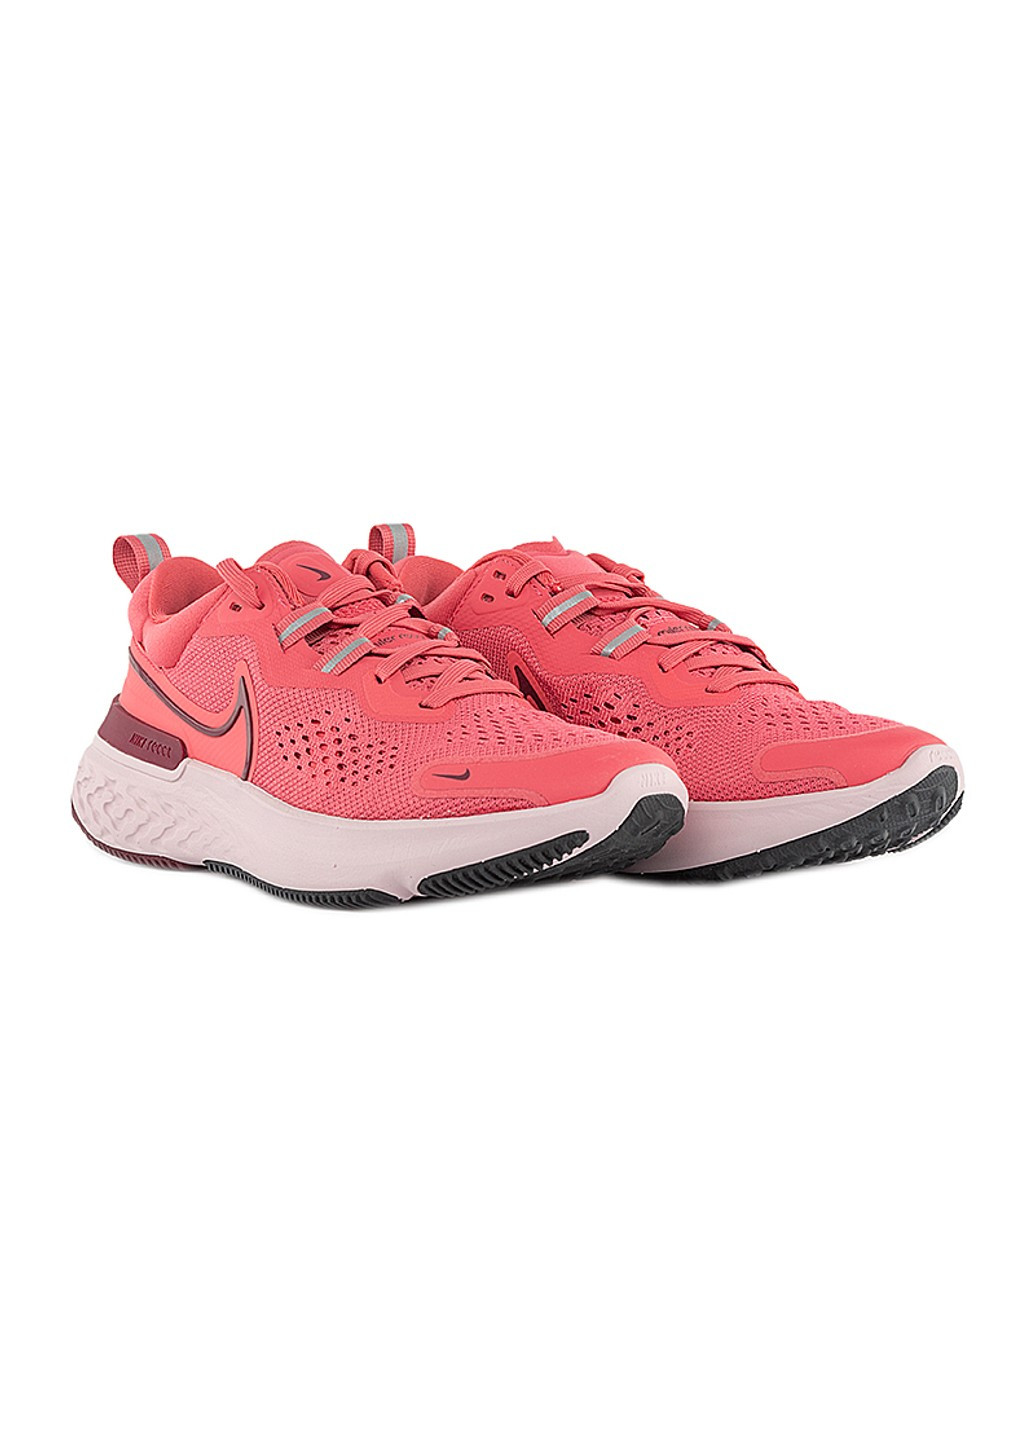 Розовые демисезонные кроссовки wmns react miler 2 Nike